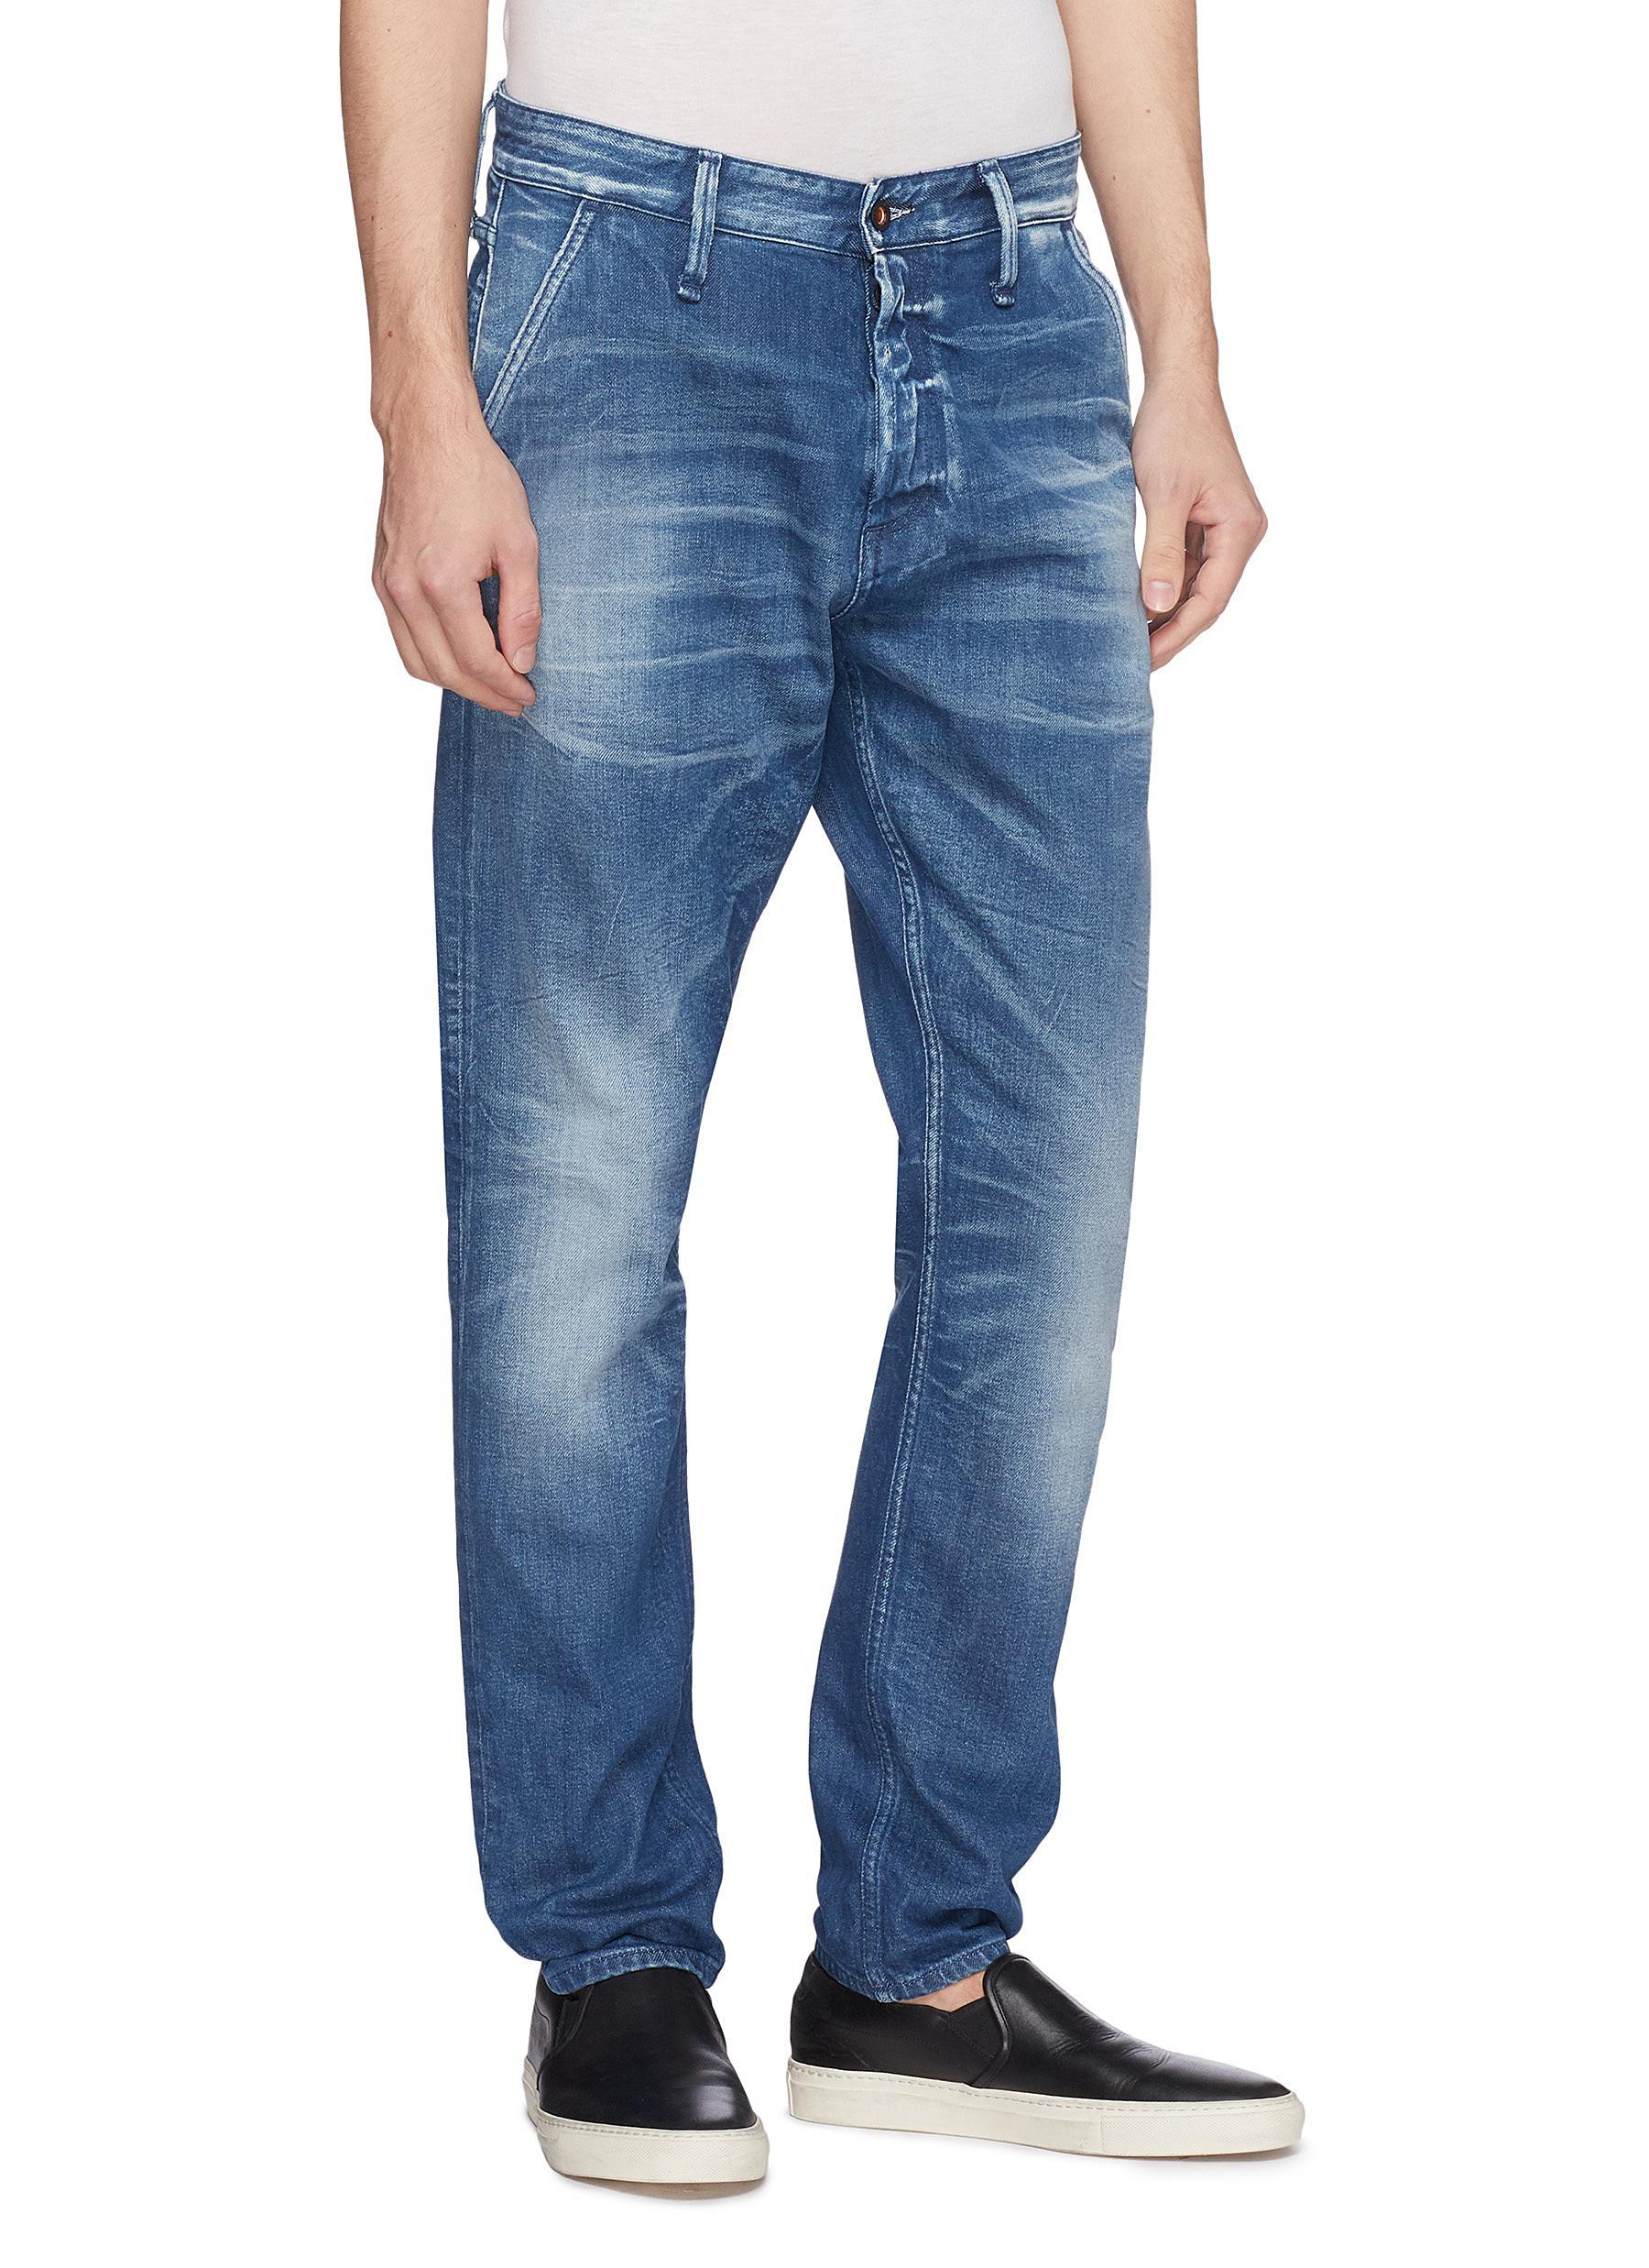 Denham Denim 'osaka' Distressed Carrot Jeans in Blue for Men - Lyst